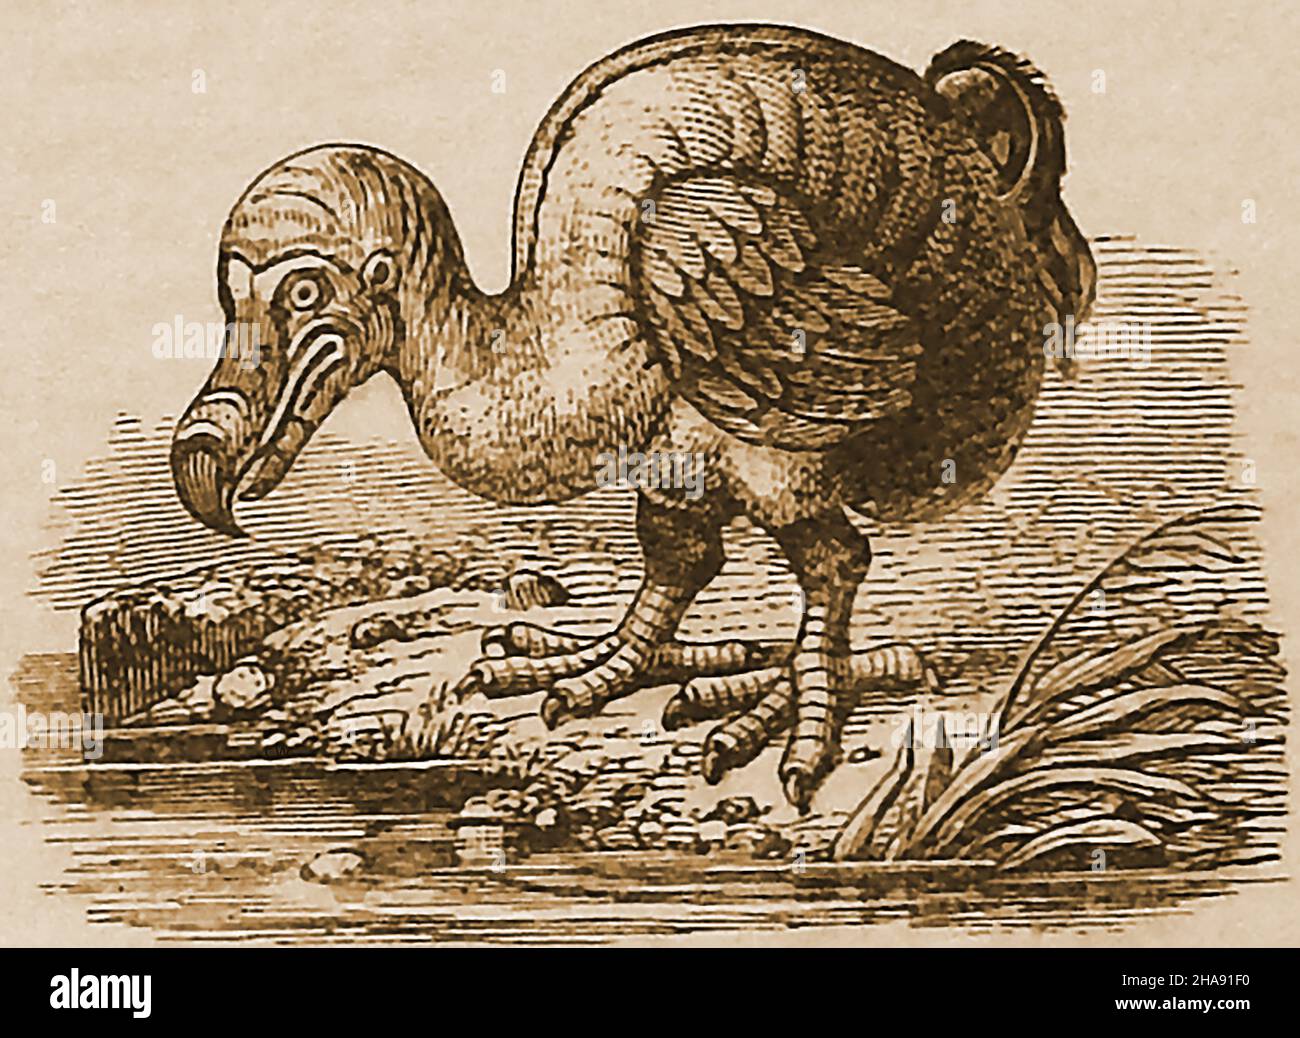 Ein Stich aus dem 19th. Jahrhundert eines ausgestorbenen und flugunfreien Dodo-Vogels. Der Dodo (Raphus cucullatus) war ein Vogel, der ausschließlich auf der Insel Mauritius (Indischer Ozean) lebte. Ihr engster genetischer Verwandter war der Rodrigues Solitaire (heute auch ausgestorben), der auf der nahe gelegenen Insel Rodrigues lebte. Die erste Erwähnung des Dodo wurde 1598 von holländischen Matrosen aufgezeichnet. Der einst reichlich vorhandene Vogel und sein einziges Ei waren offensichtlich gut verspeist, was dazu führte, dass er von aufeinander folgenden Gruppen von besuchenden Seeleuten gejagt wurde, was kurz nach 1662, als er zuletzt gesichtet wurde, zu seinem Aussterben führte. Stockfoto